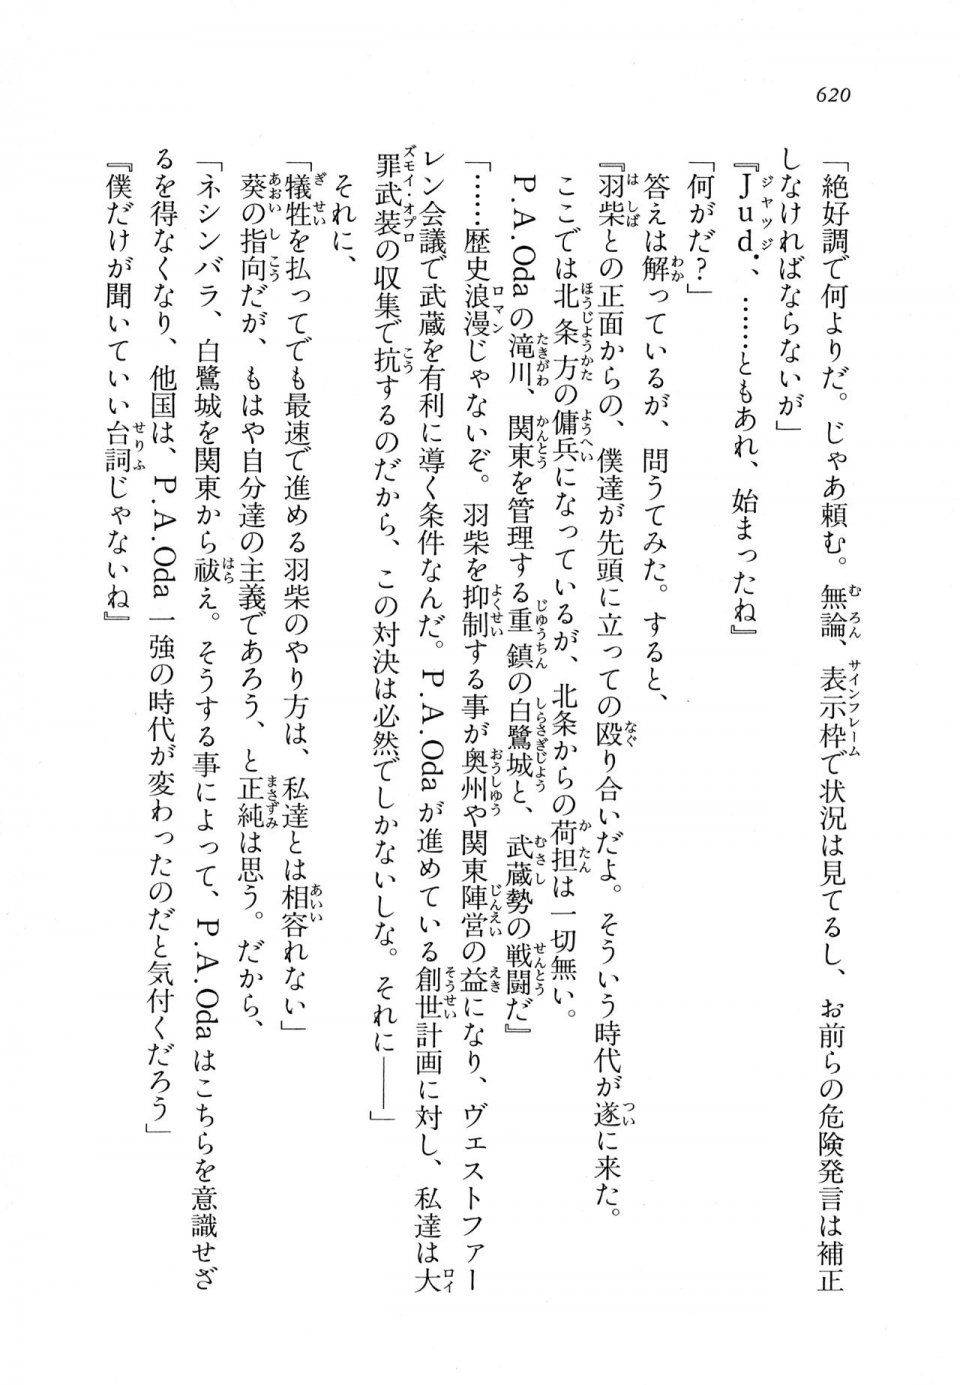 Kyoukai Senjou no Horizon LN Vol 11(5A) - Photo #620